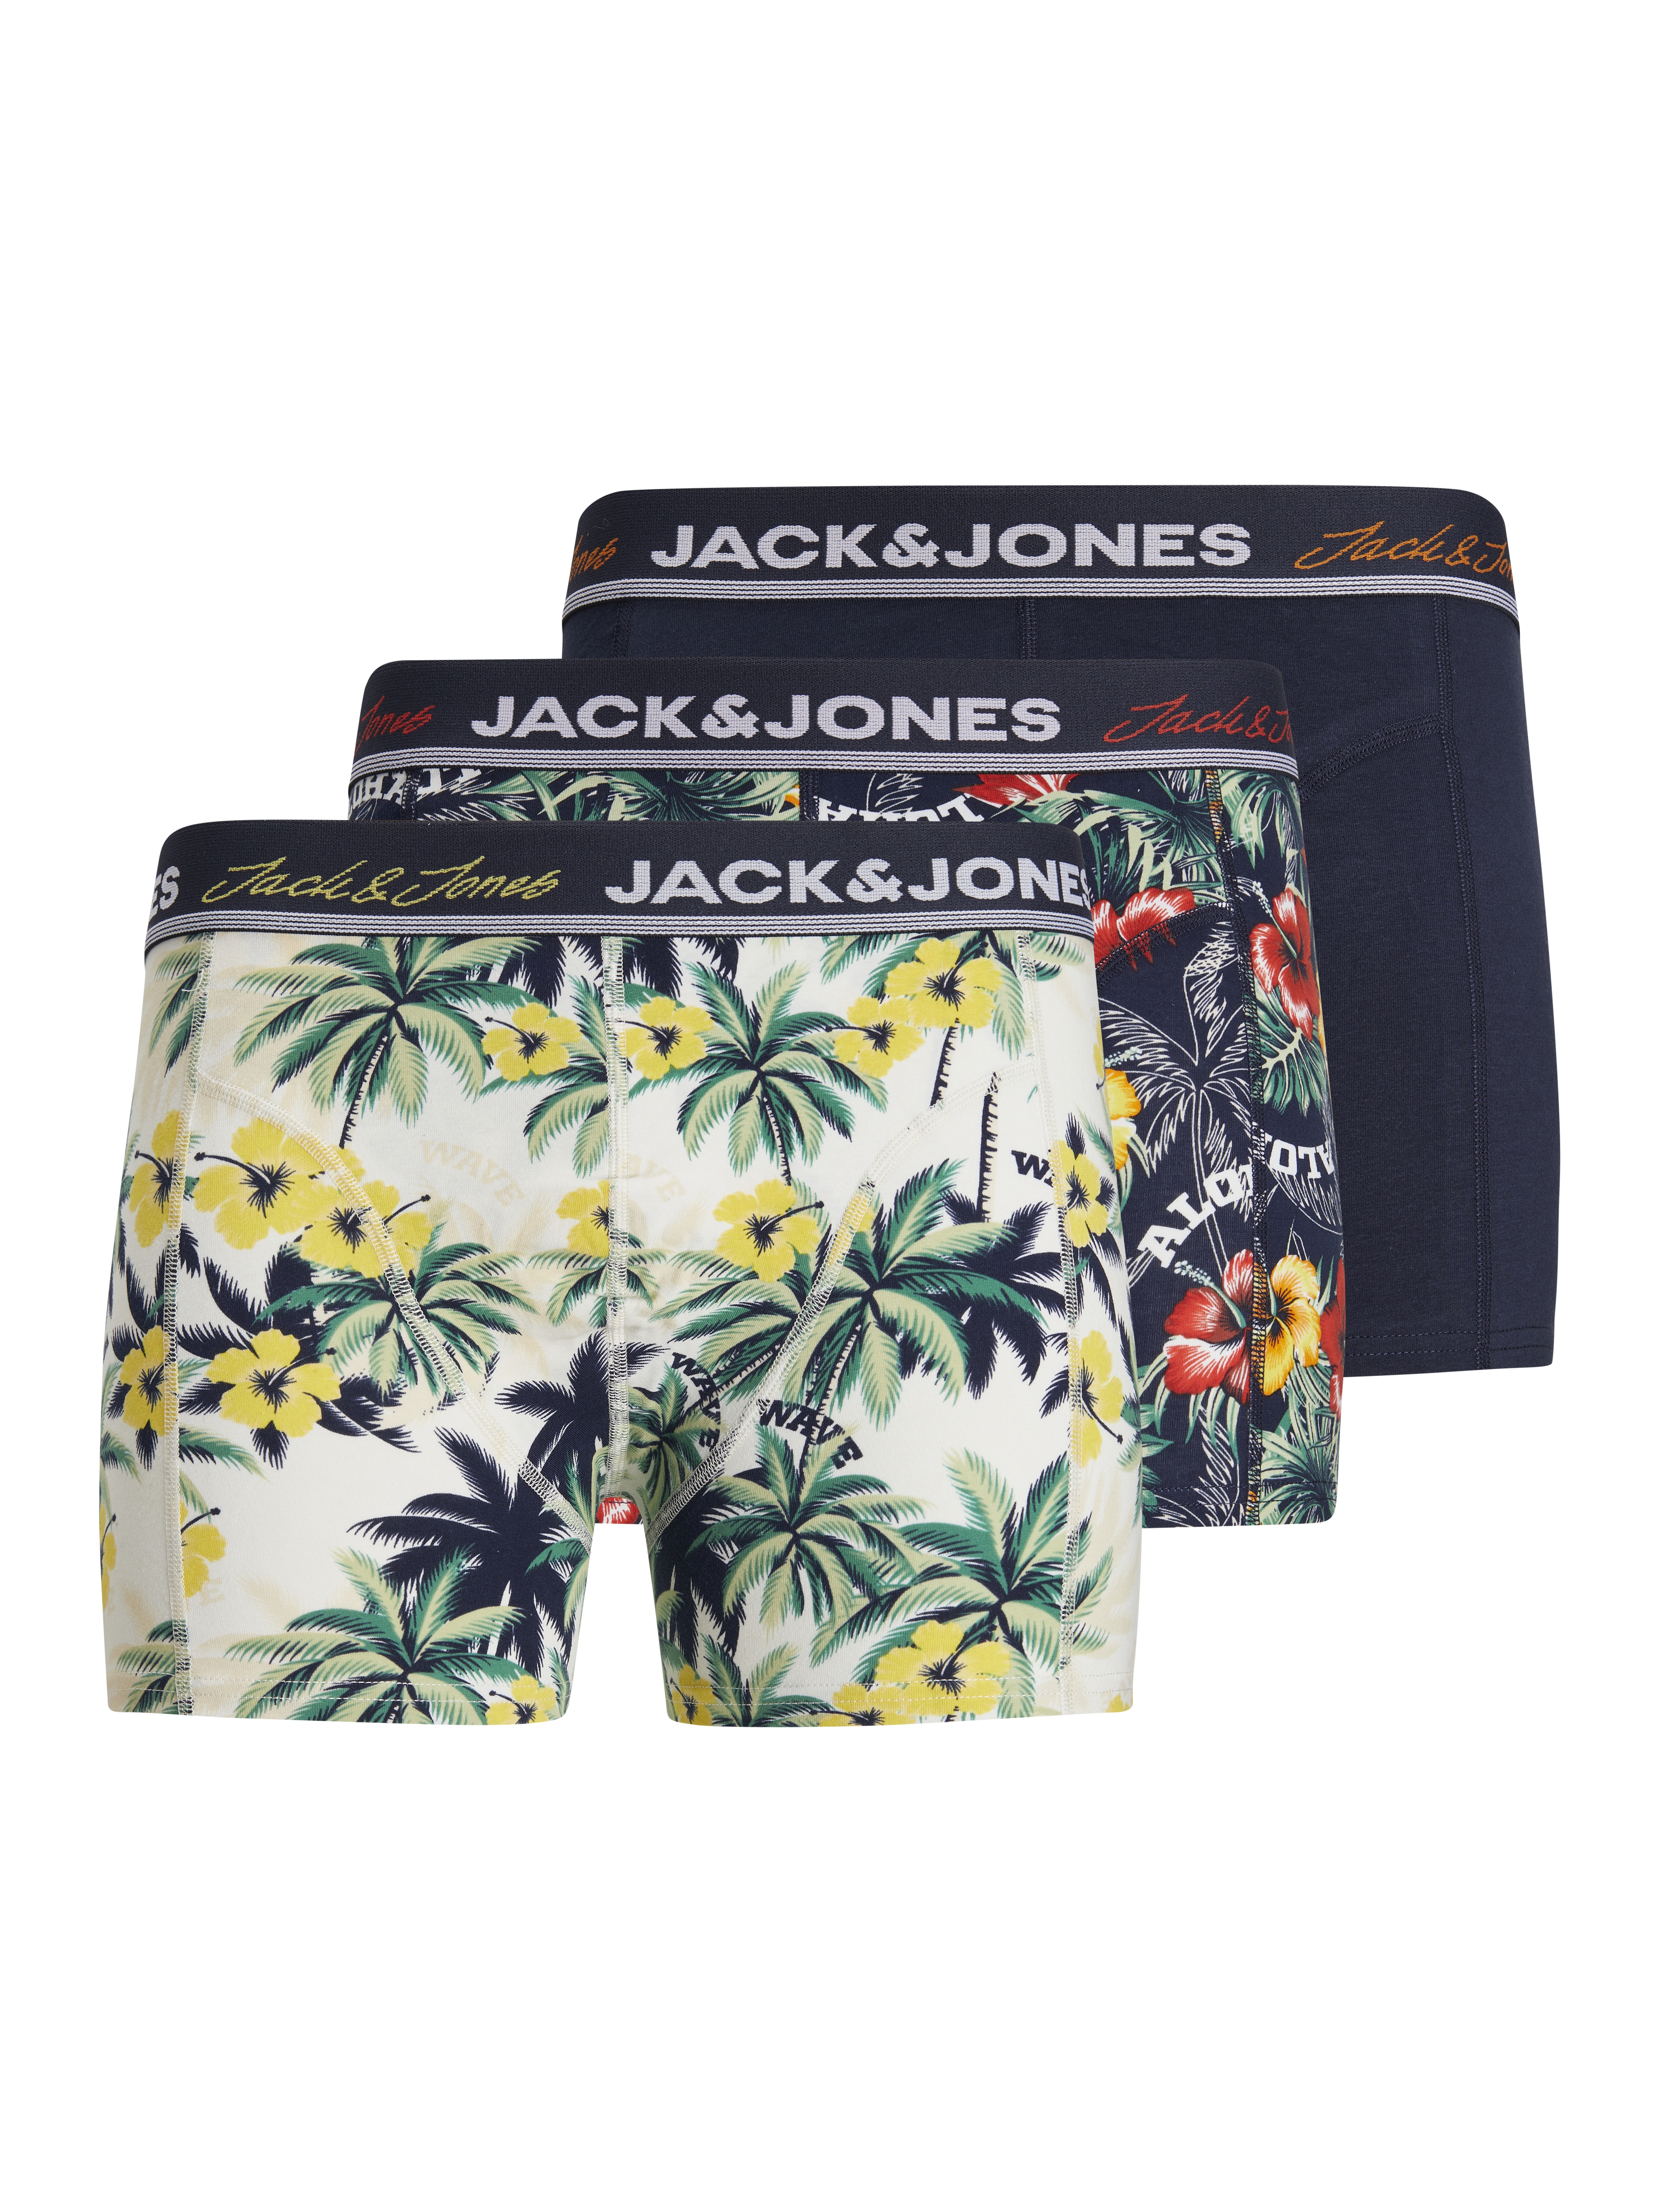 Afbeelding van Jack & Jones Jacvenice trunks 3 pack jnr